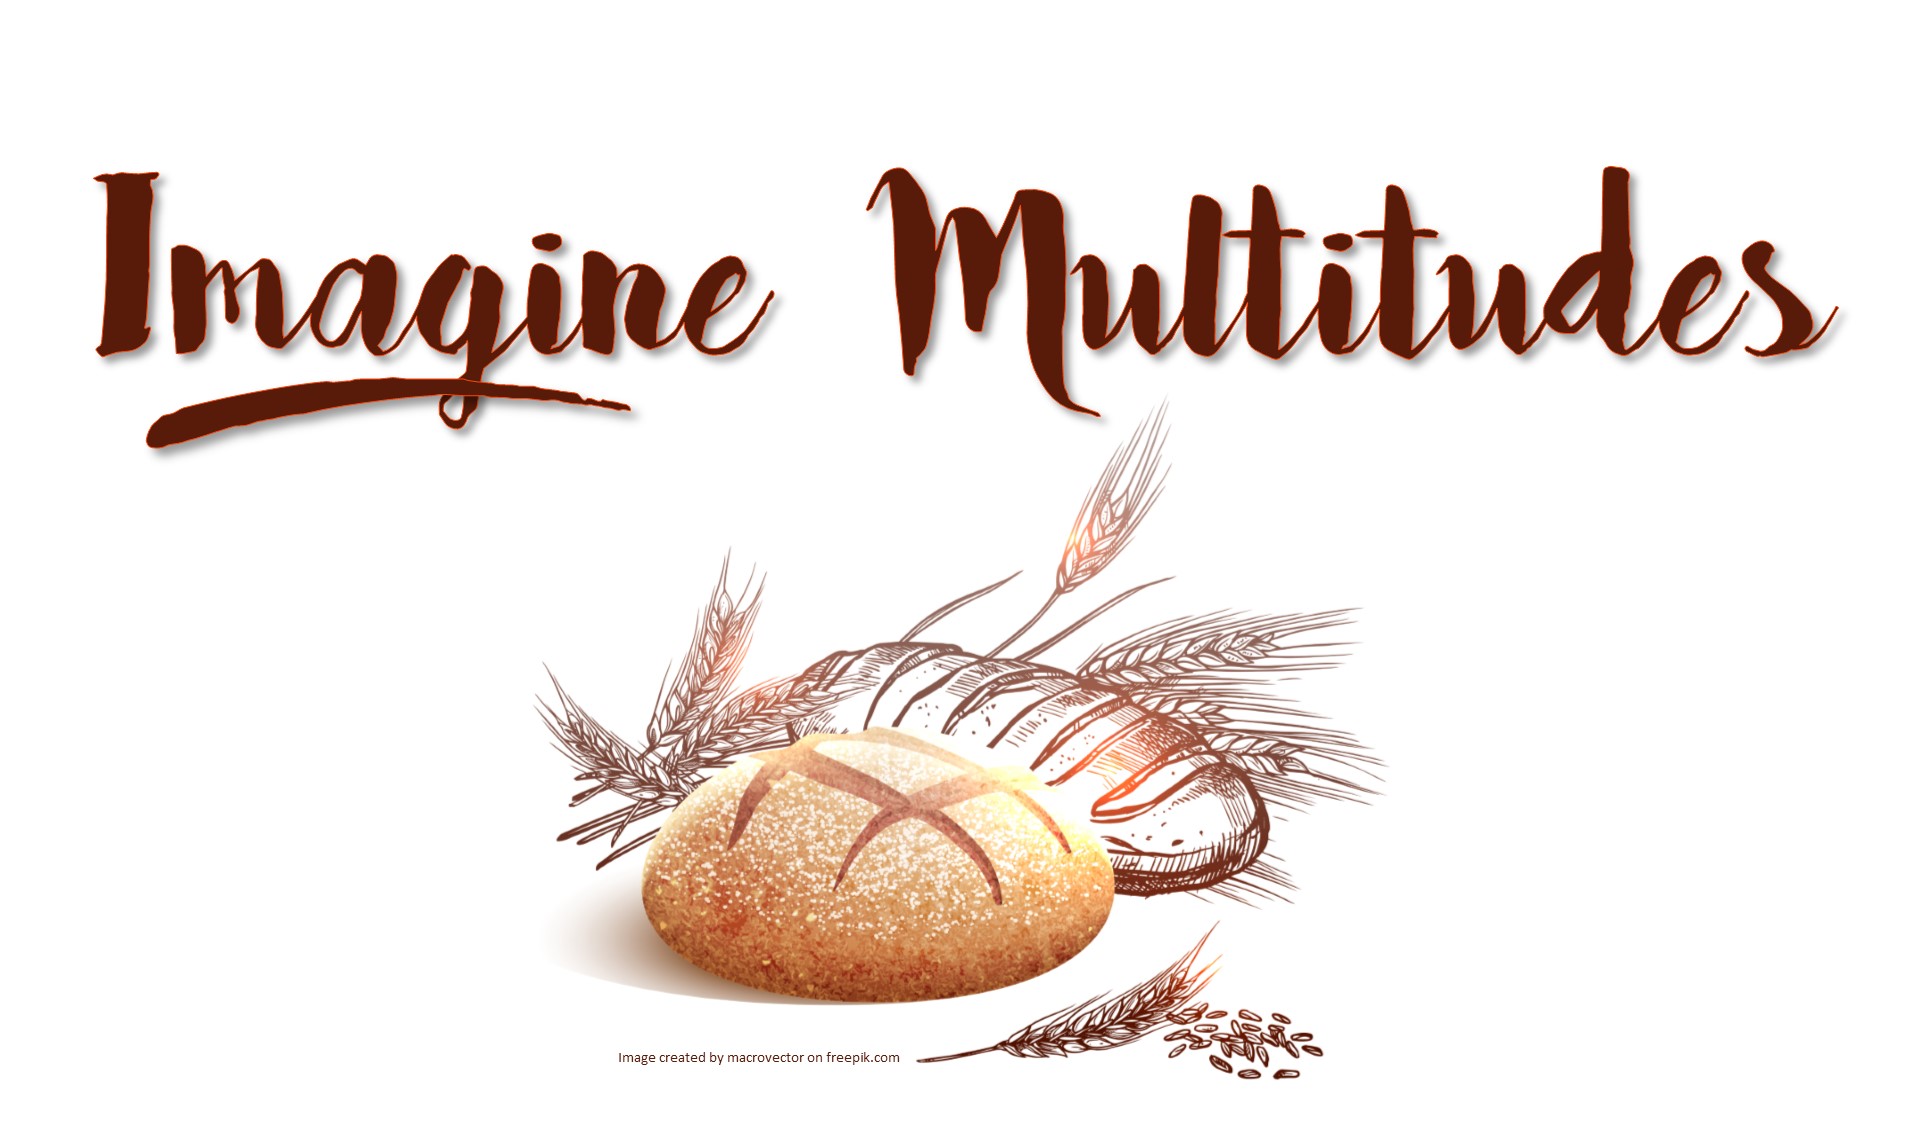 Take Our Bread: Imagine the Multitudes